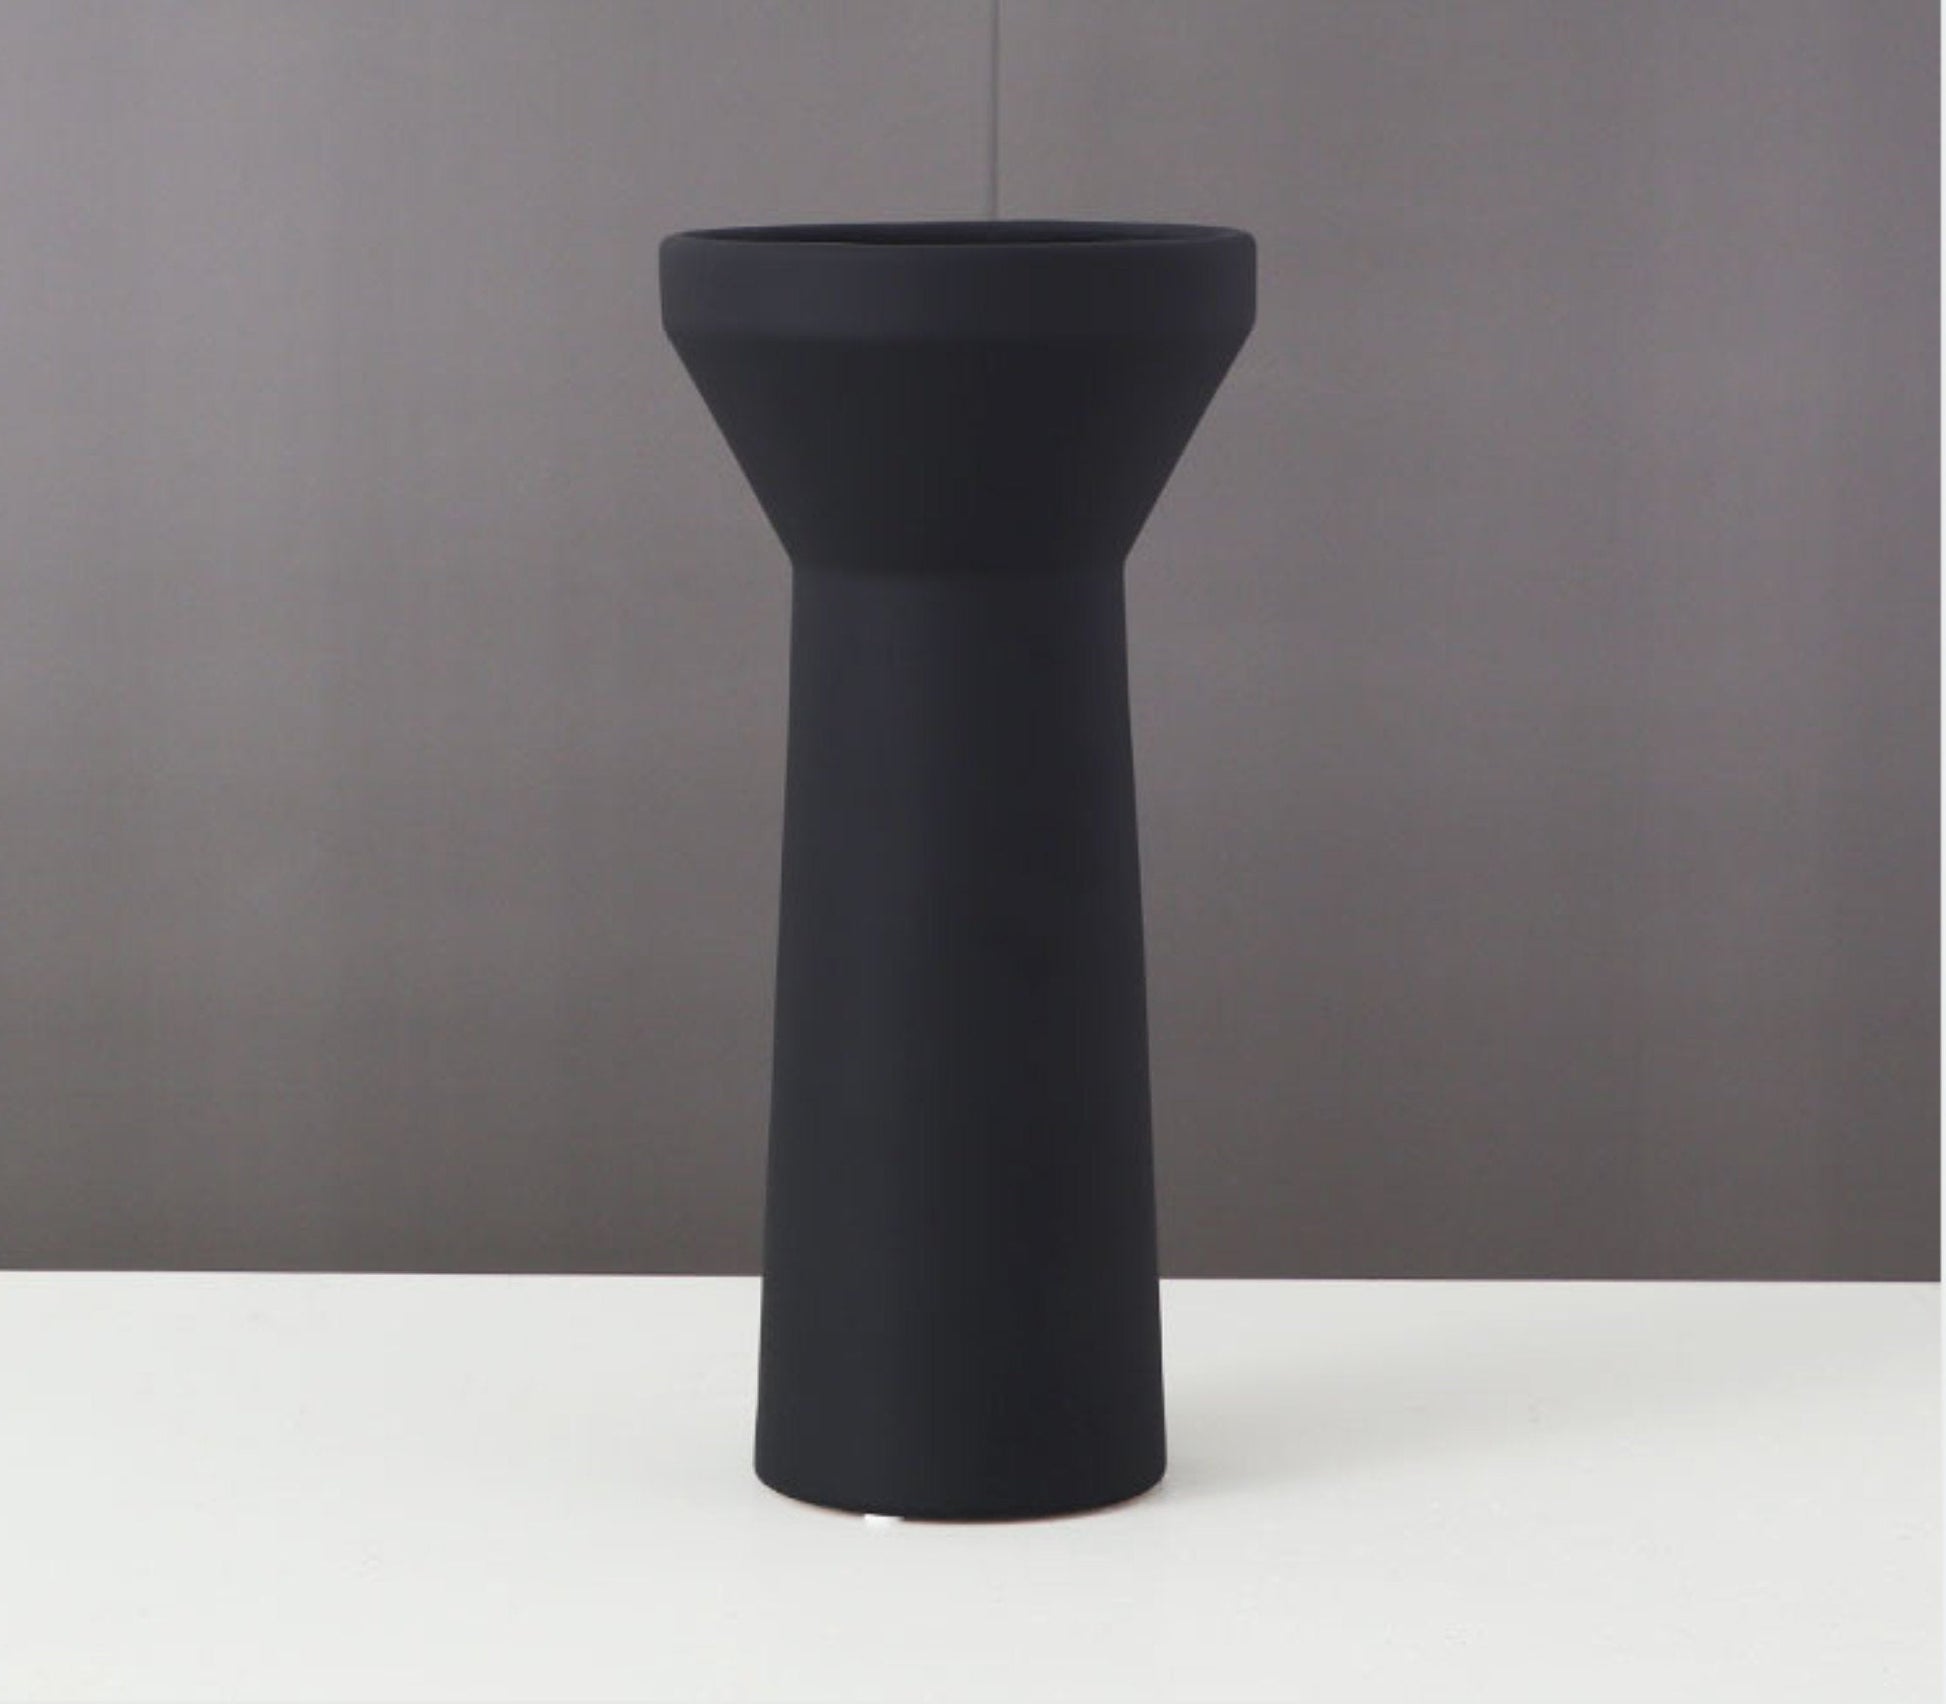 Black and White Vase Ceramic Table Vase | Zen Decor, Ceramic Vase, Minimalist Vase Ceramic, - -